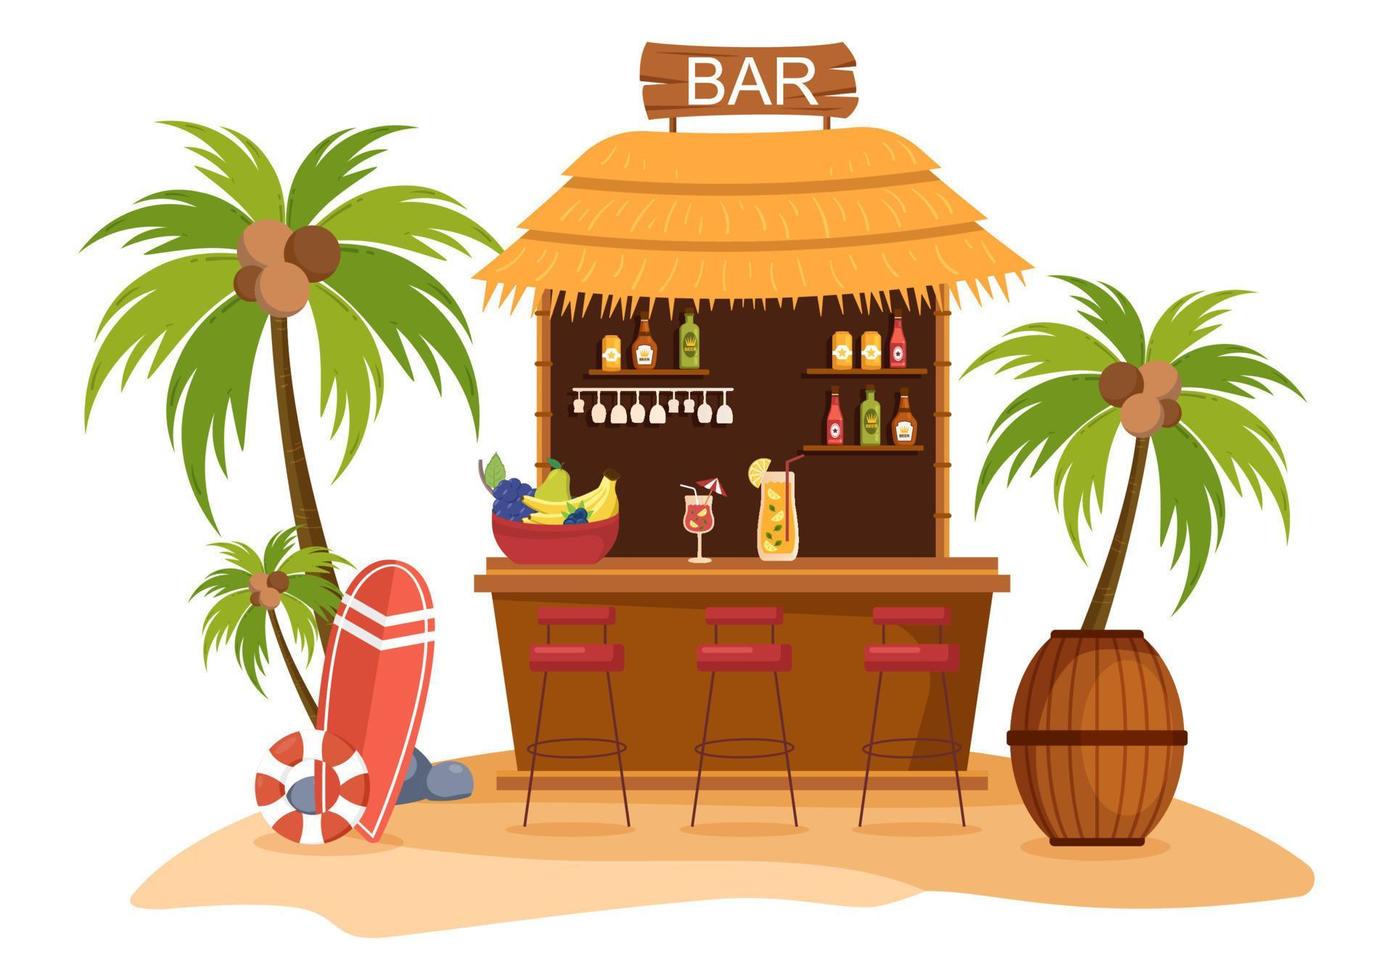 bar tropical o pub en la playa con botellas de bebidas alcohólicas, barman, mesa, interior y sillas junto al mar en una caricatura plana vector